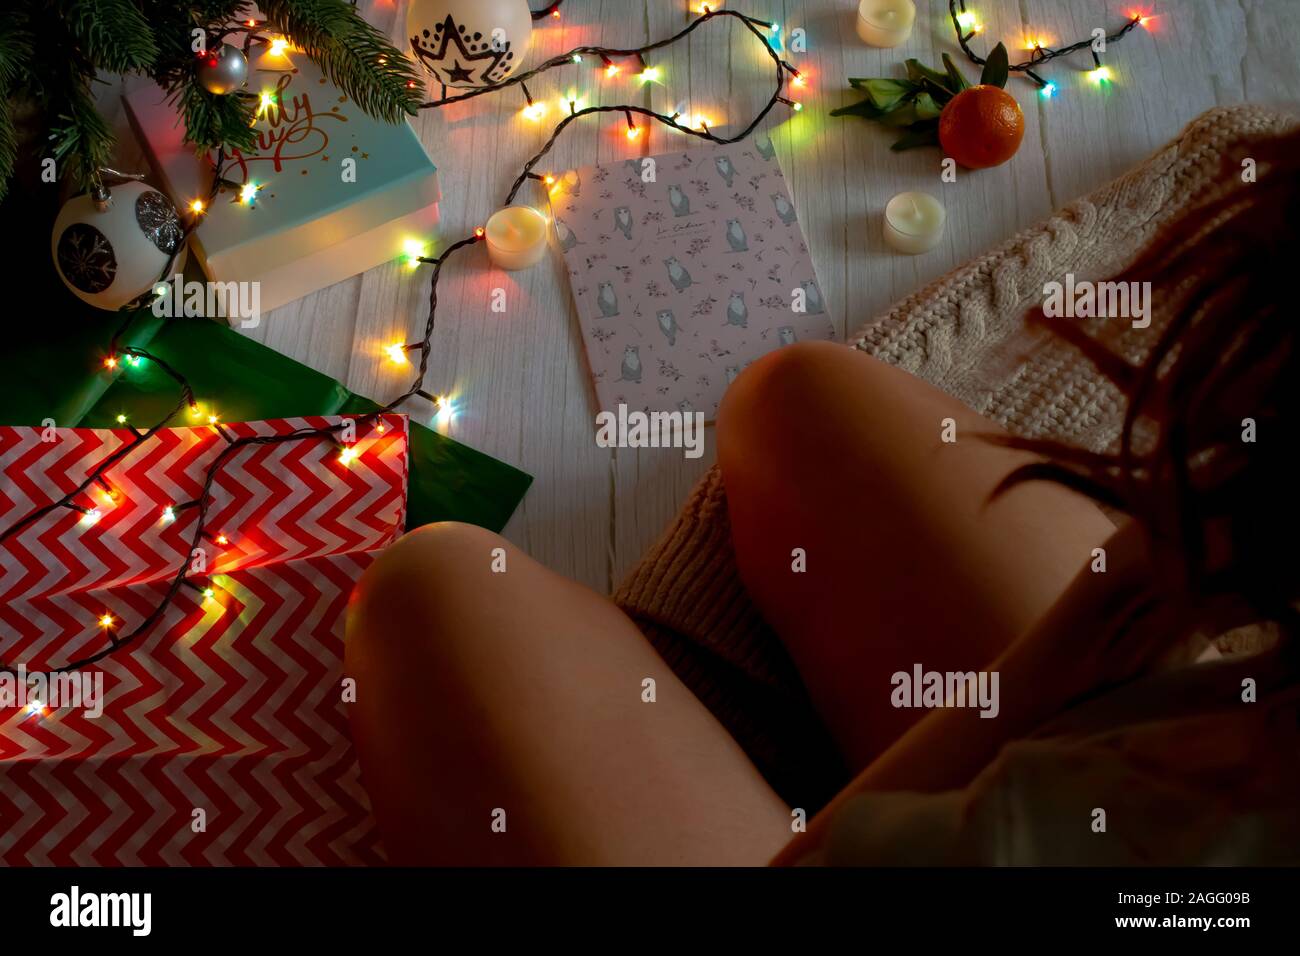 Neues Jahr Konzept, einem Mädchen, das in der Nähe der Weihnachtsbaum, eine leuchtende Girlande, Kerzen und Geschenke. Ansicht von oben für Silvester oder Weihnachten Banner. Stockfoto